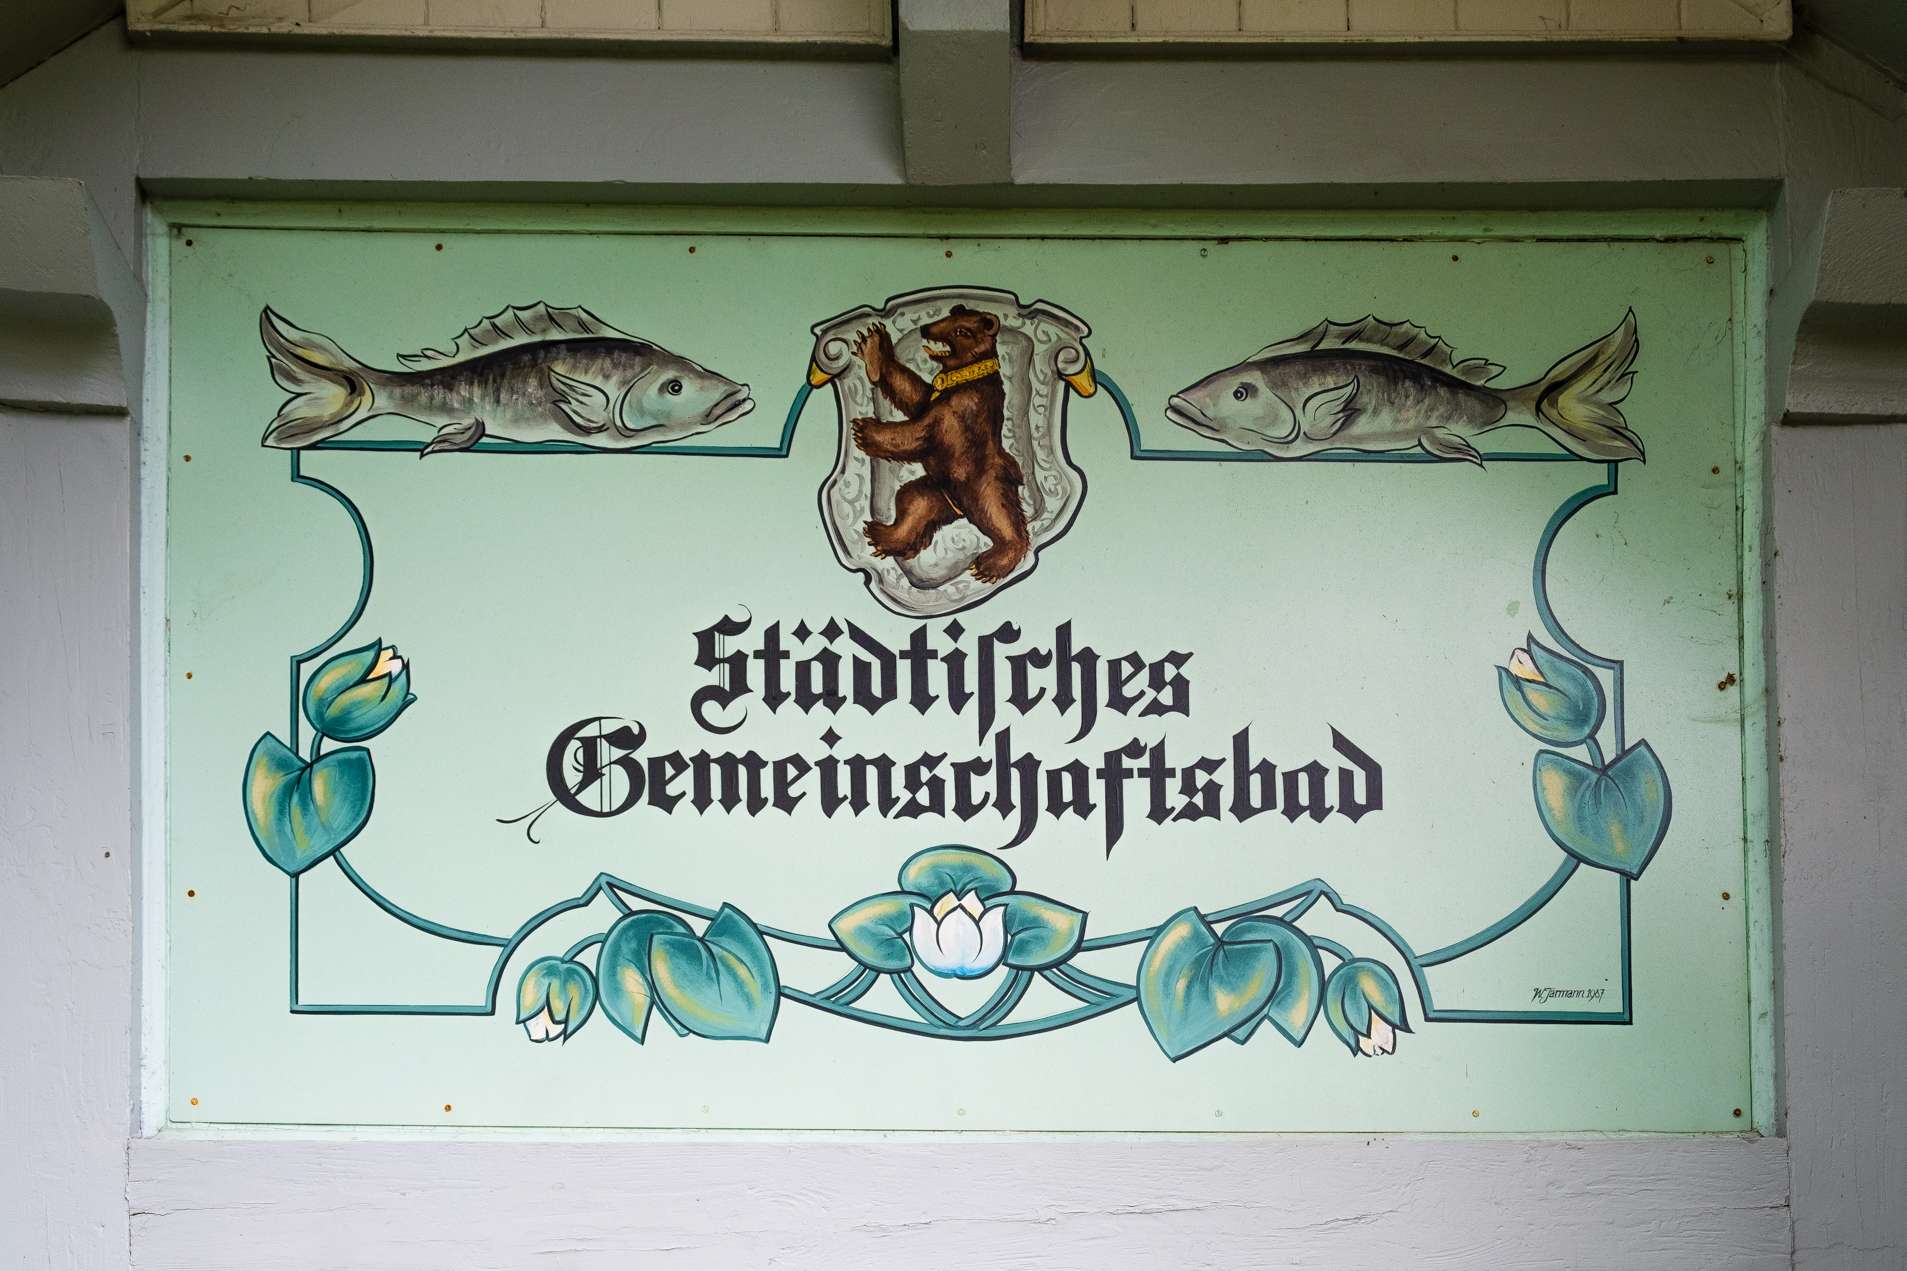 Sign at Drei Weieren in St. Gallen saying "Städtisches Gemeinschaftsbad" - communal bath